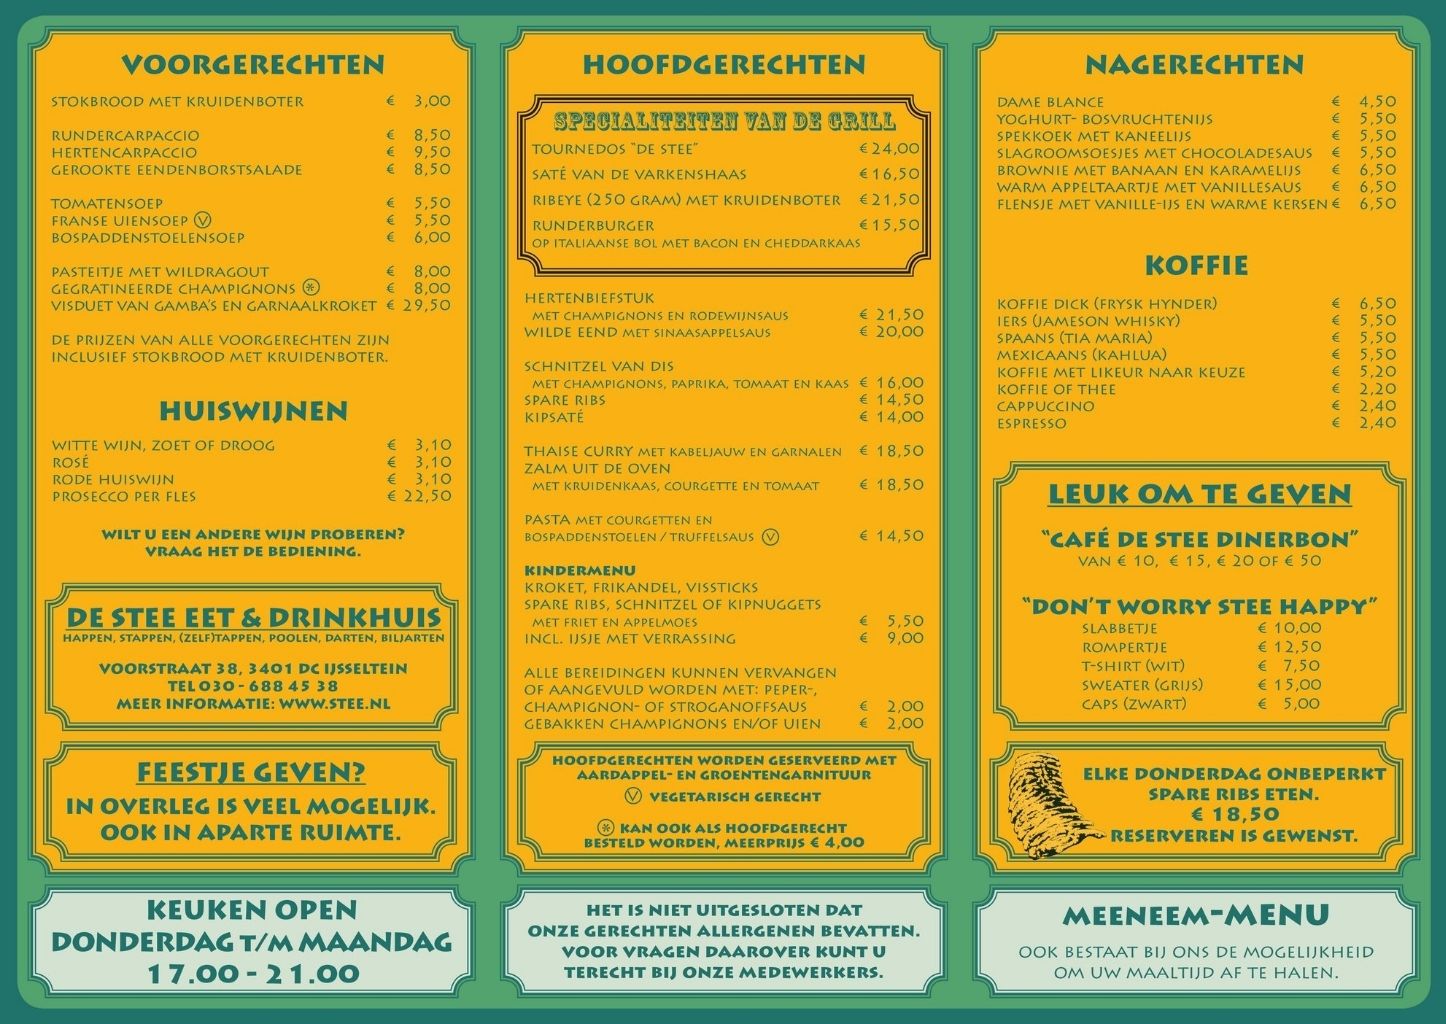 Heerlijk uit eten in IJsselstein doe je in De Stee, bekijk onze menukaart